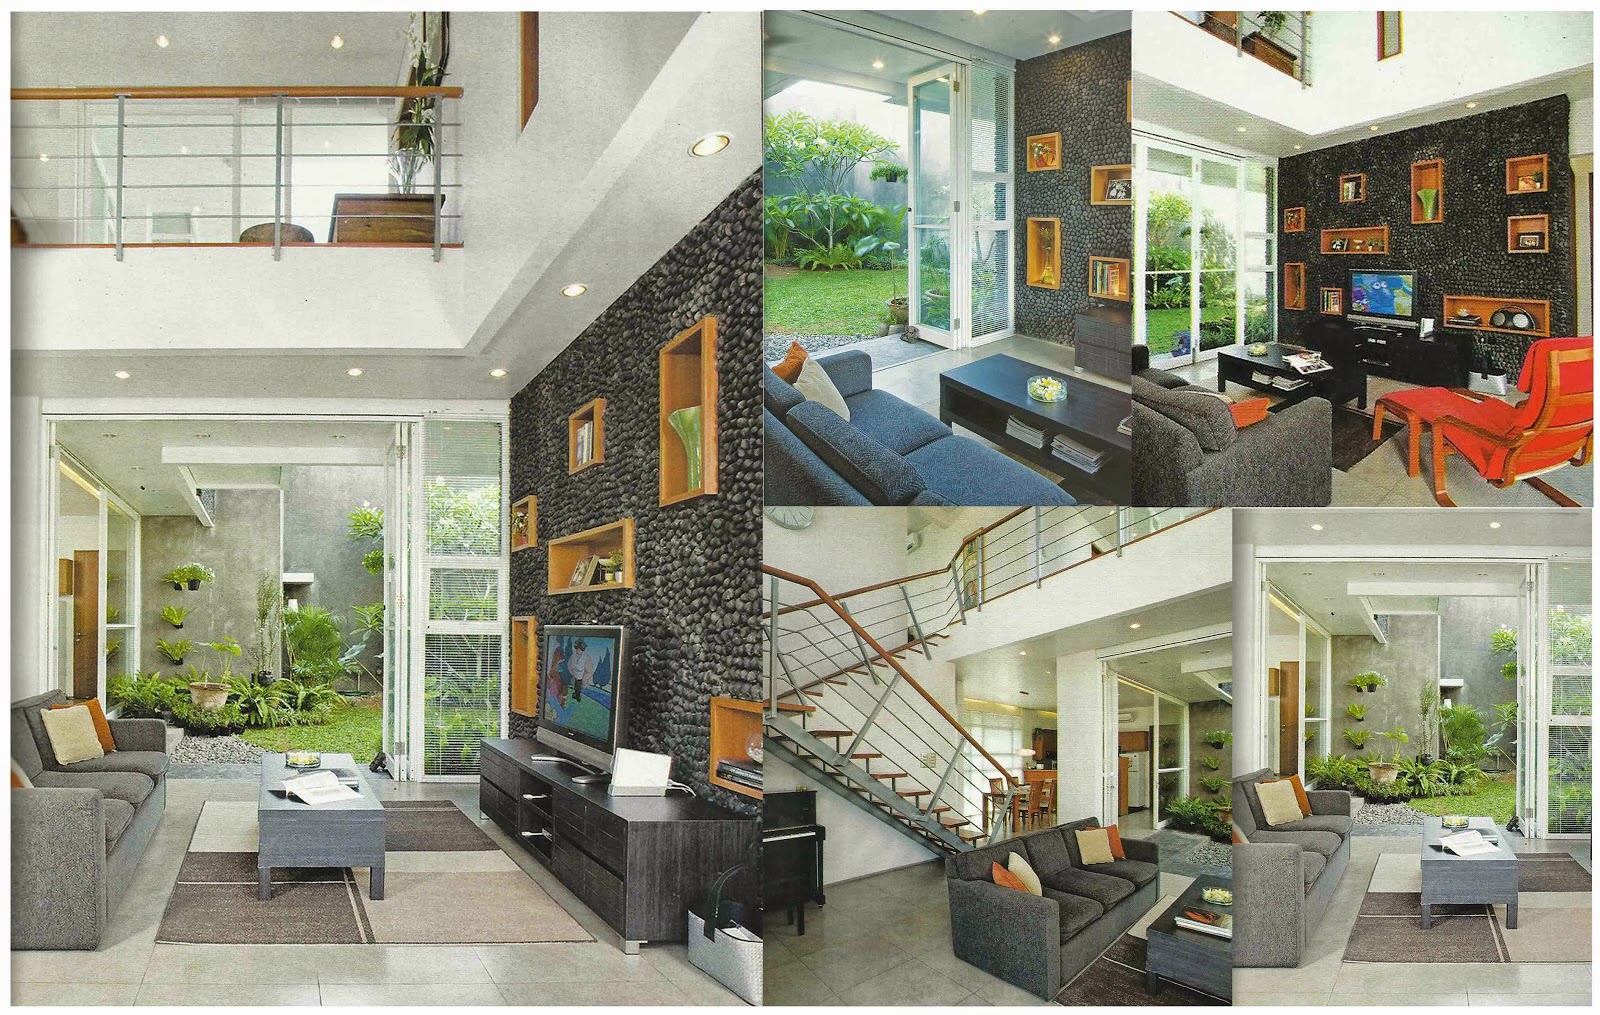 Jasa Desain Rumah Interior dan Borongan September 2013